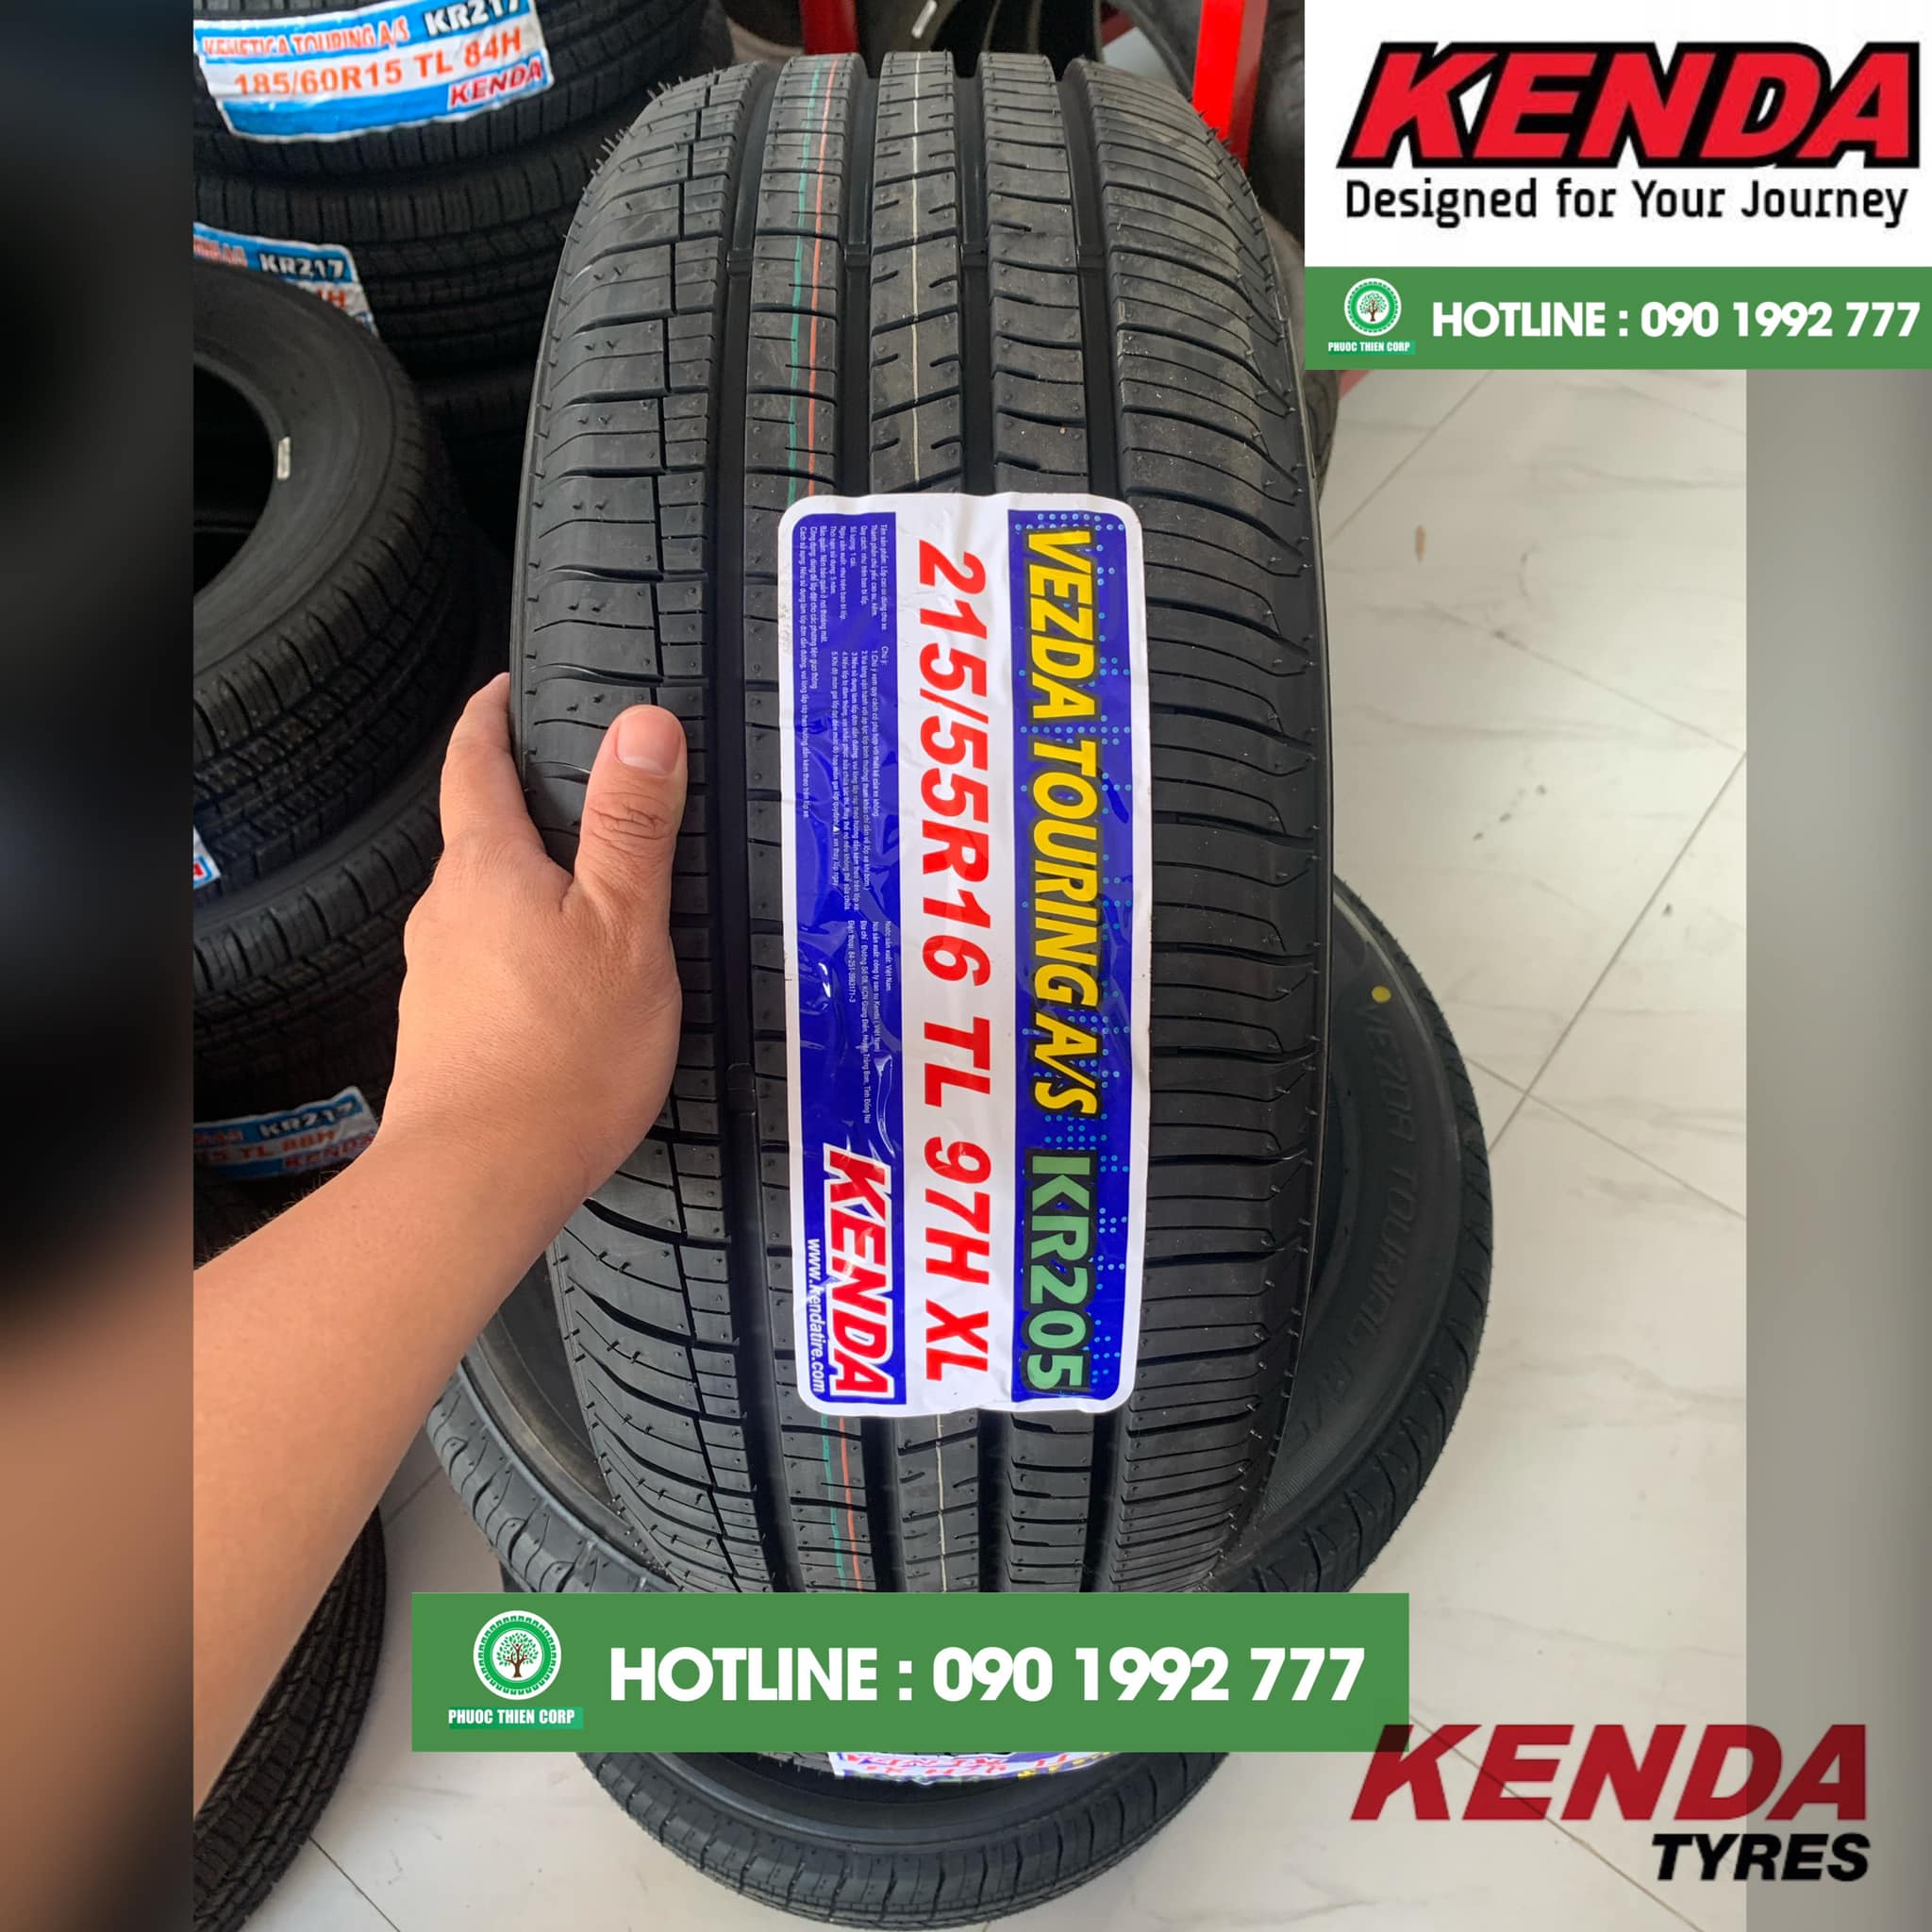 Review : Thay lốp 215/55R16 Kenda KR205 cho Honda Civic